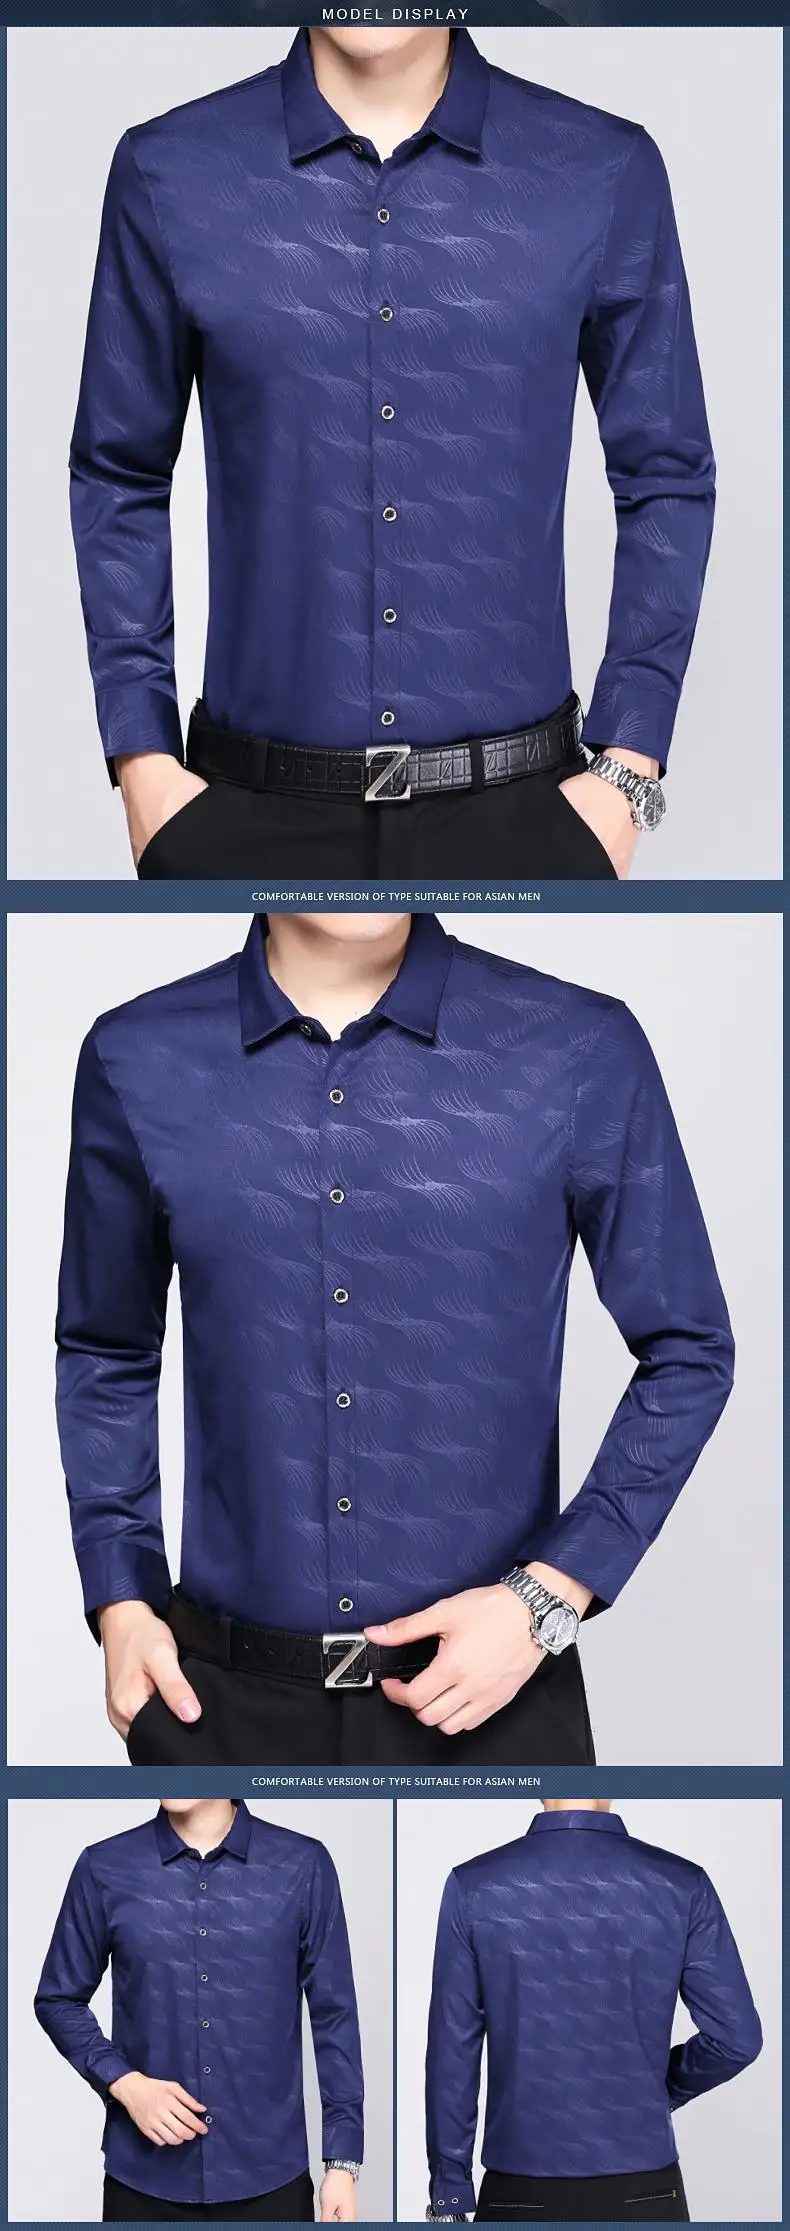 2019 хлопок, приталенная Мужская рубашка с длинным рукавом, платье, camisa social masculina blusas, повседневные мужские рубашки, Джерси, одежда 72237